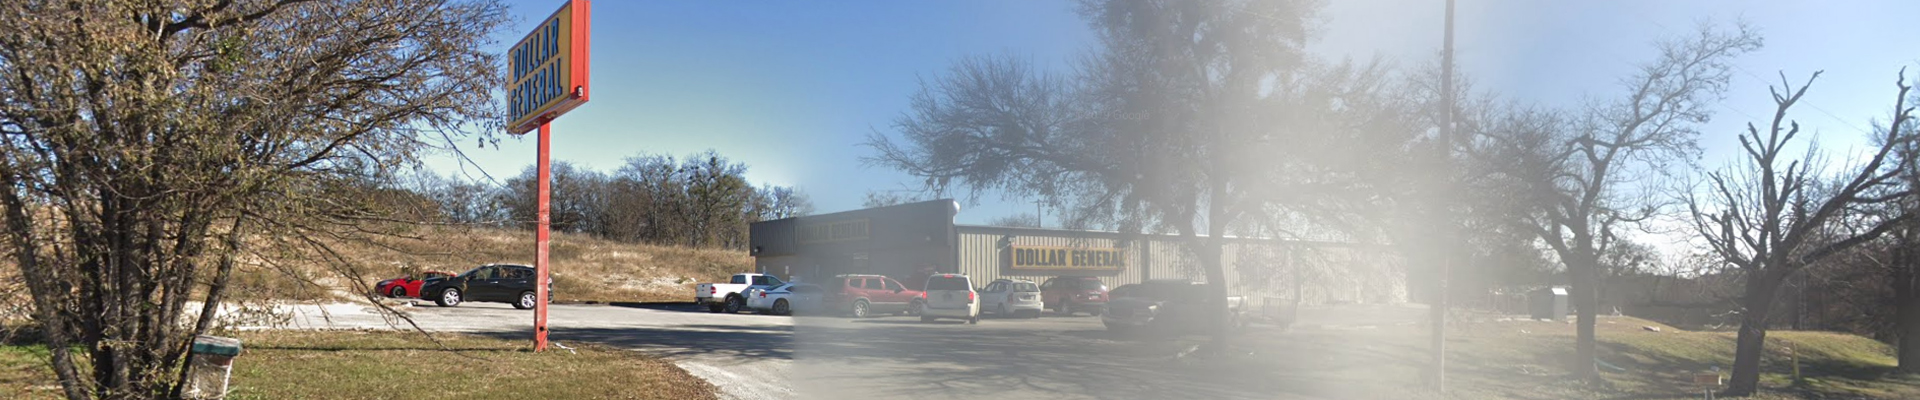 Dollar General (7992) – Hico, Texas